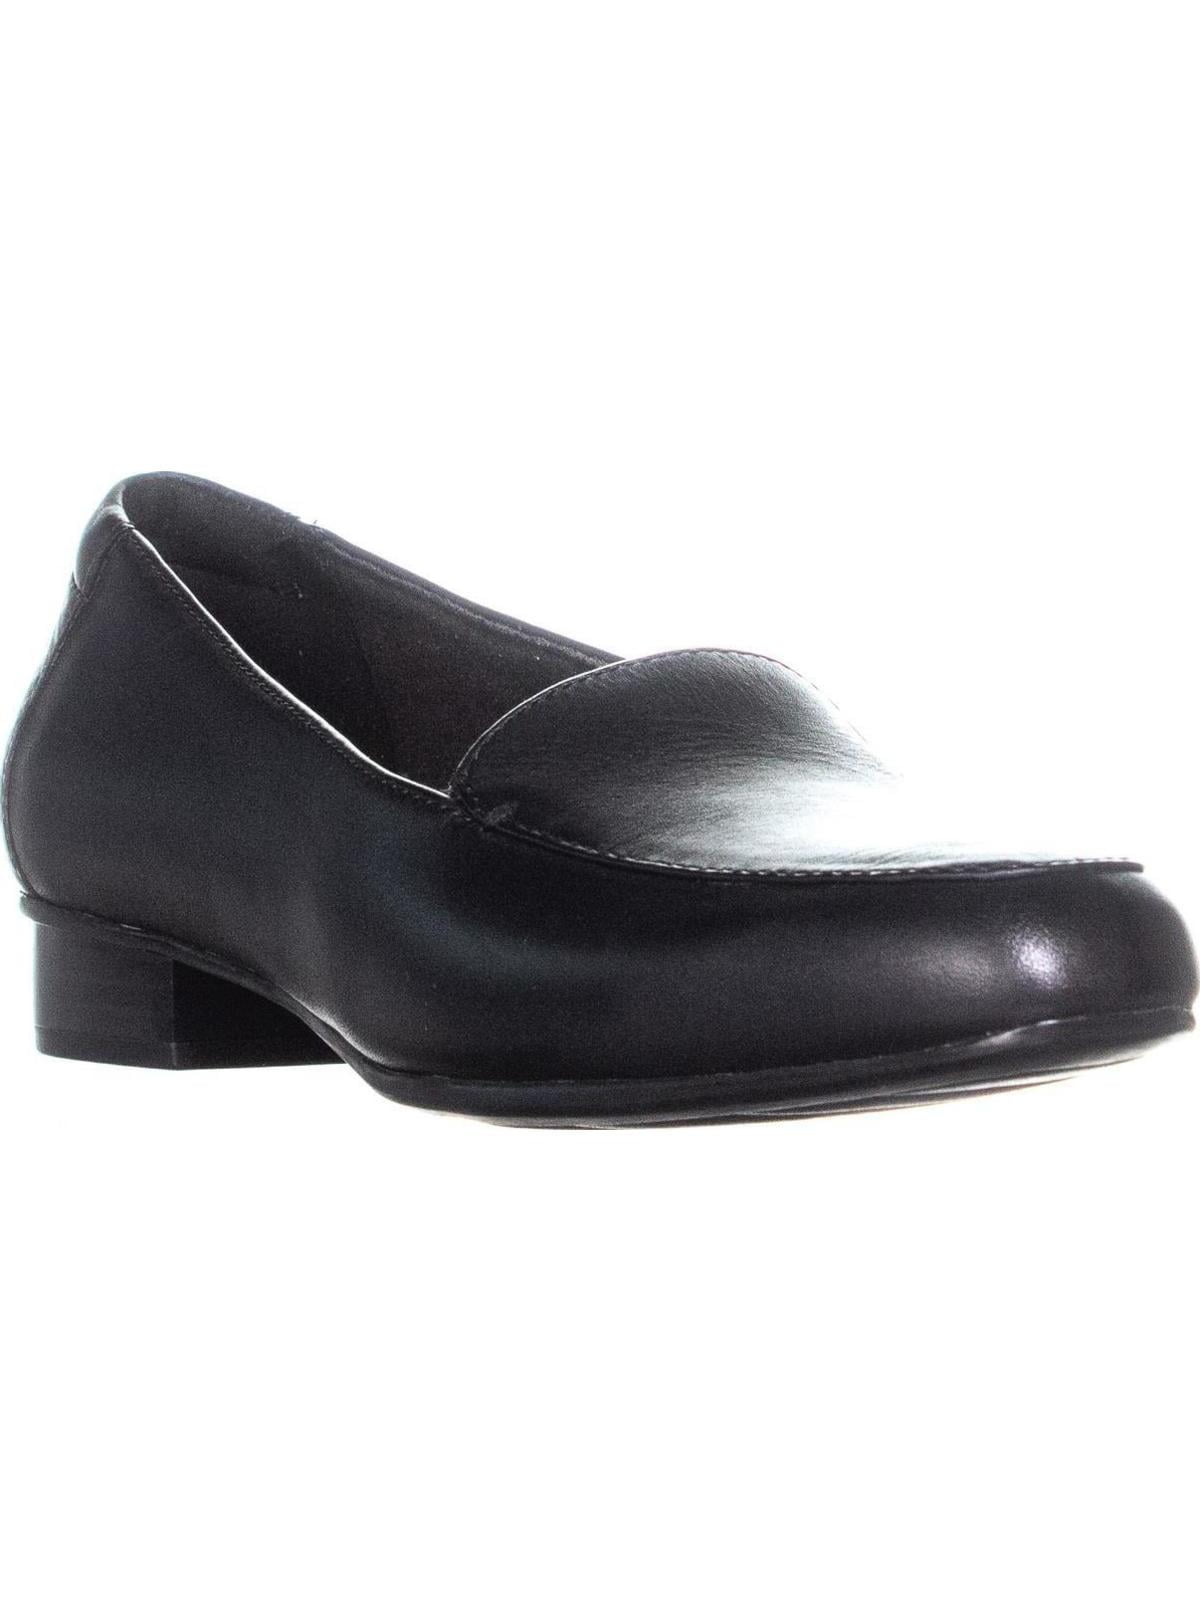 Clarks Juliet Lora Slip-On Loafers, Black Leather | Walmart Canada